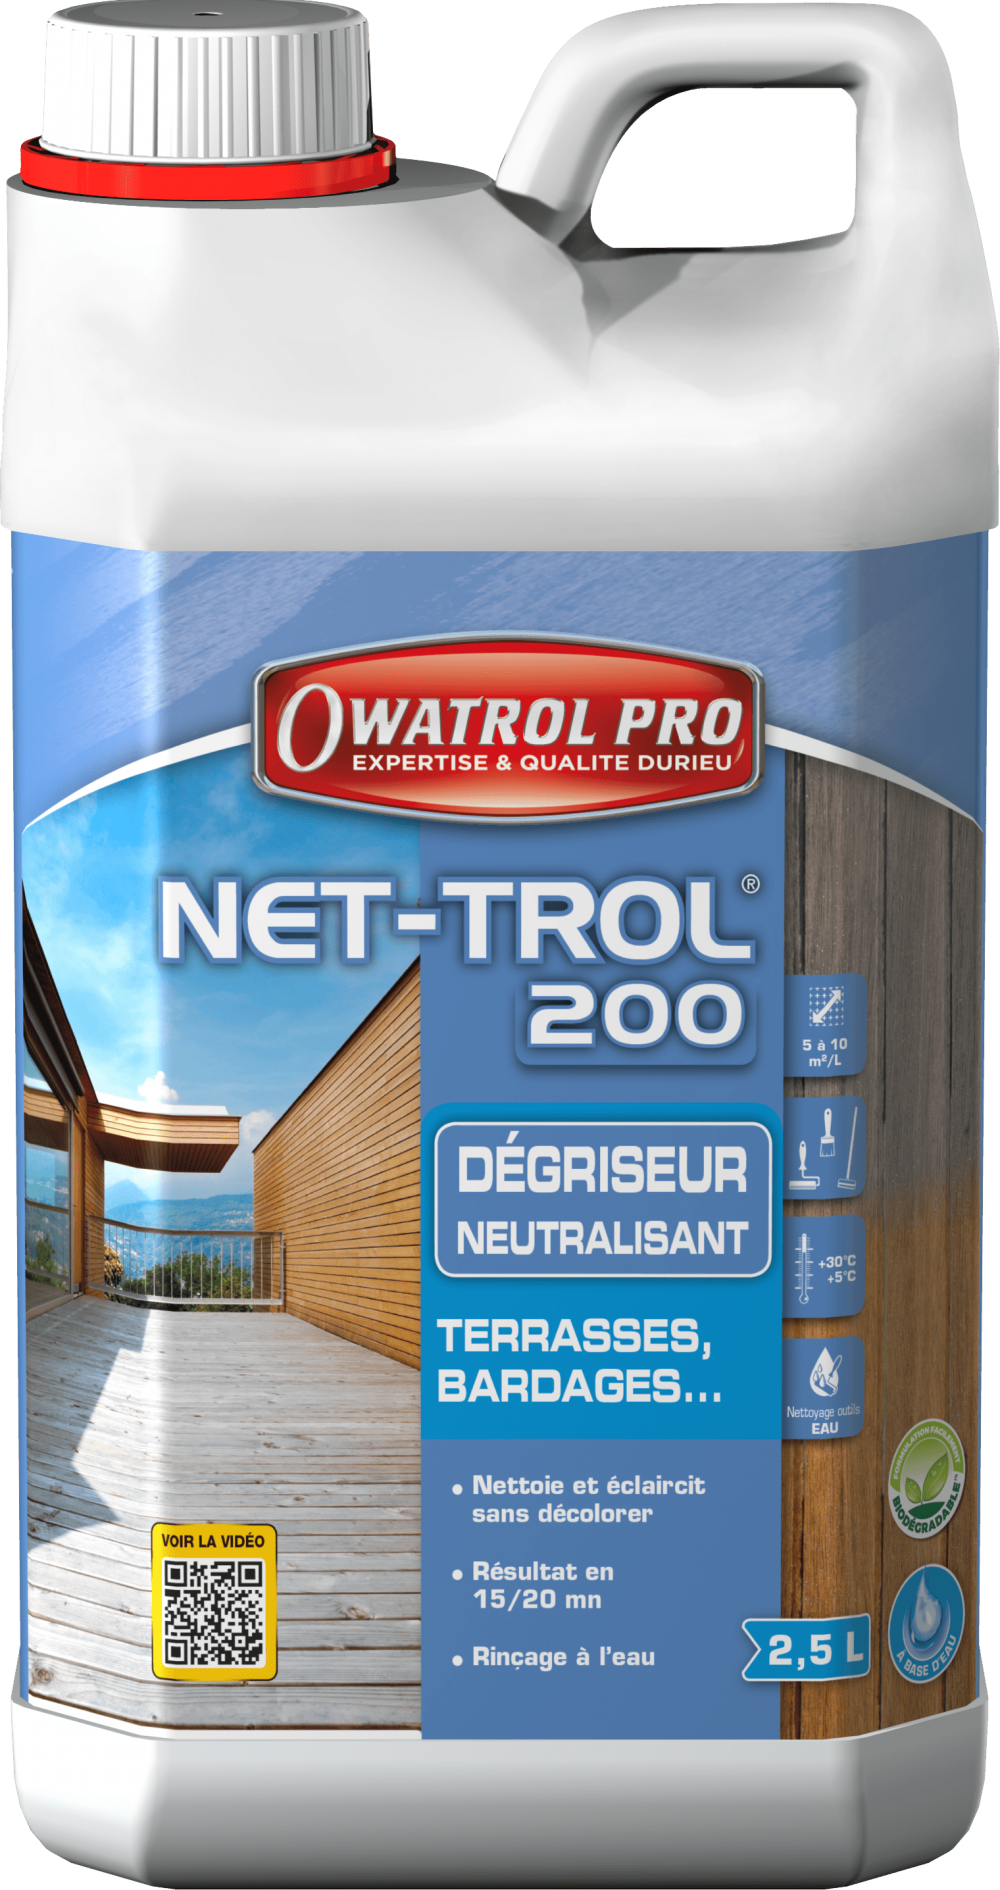 NET TROL 200